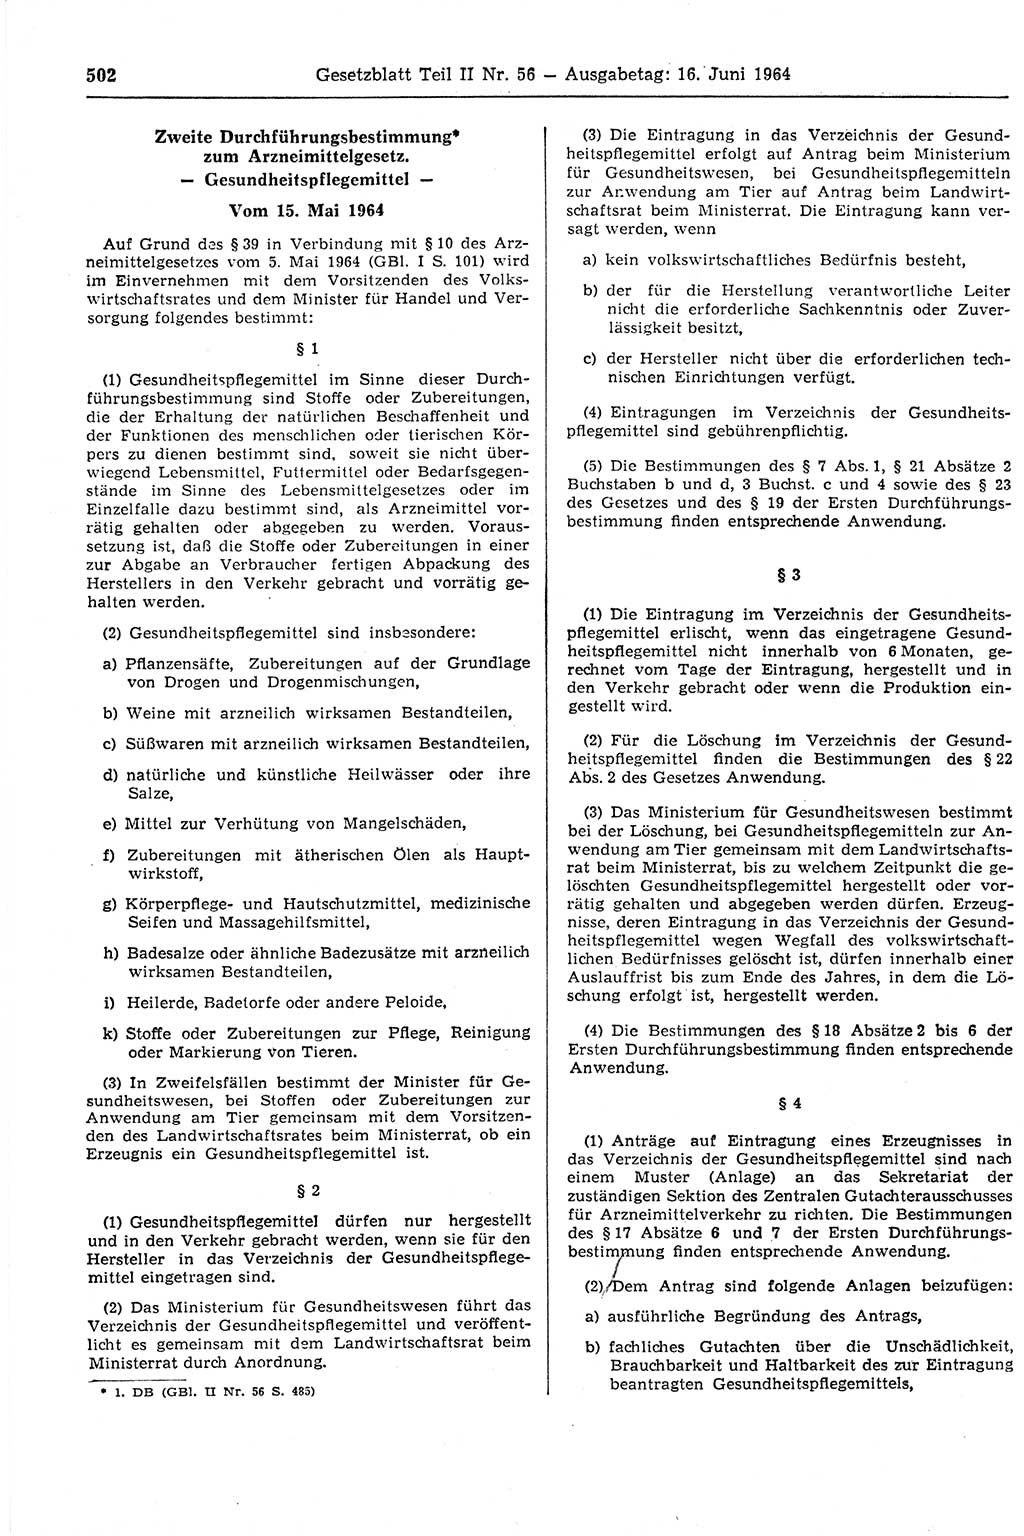 Gesetzblatt (GBl.) der Deutschen Demokratischen Republik (DDR) Teil ⅠⅠ 1964, Seite 502 (GBl. DDR ⅠⅠ 1964, S. 502)